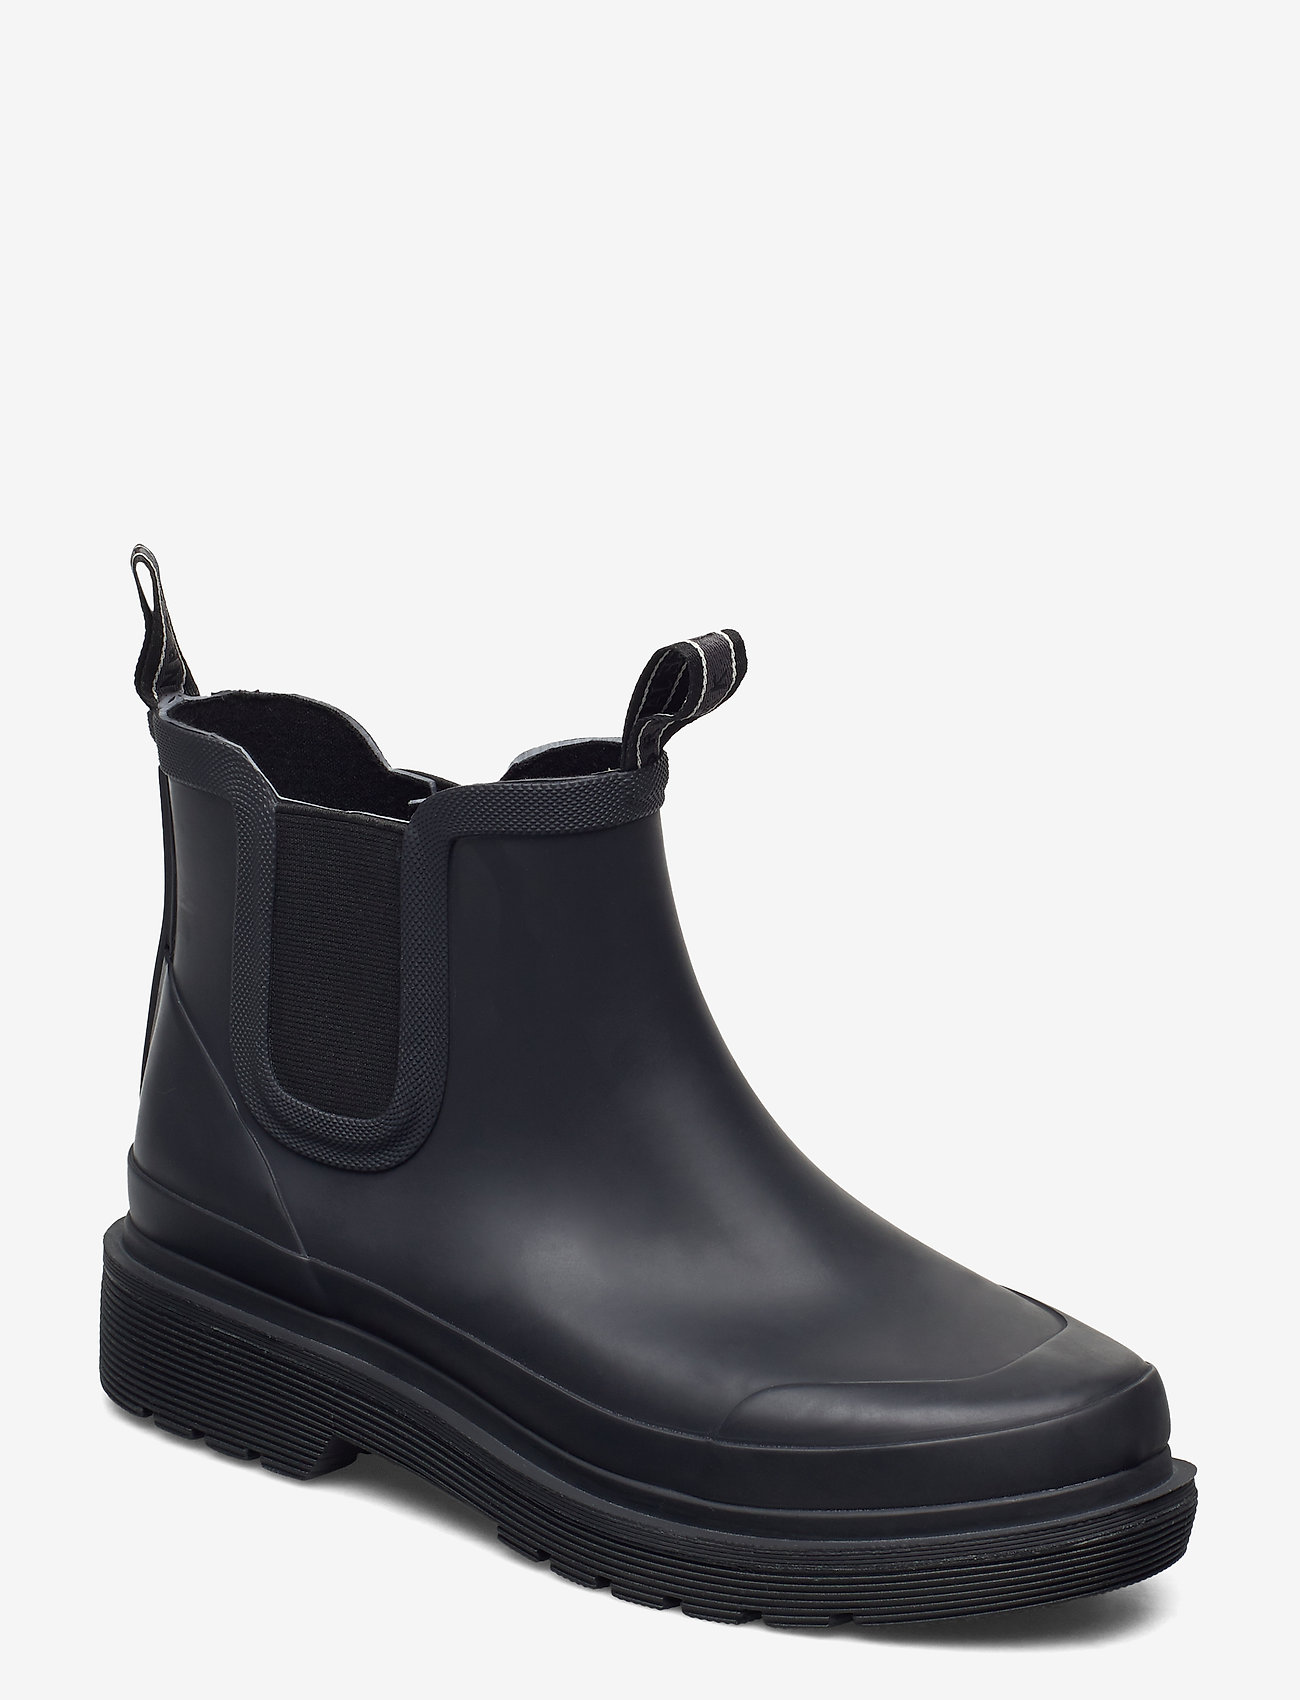 Ilse Jacobsen - Rubber boots ankel - basics - black - 0